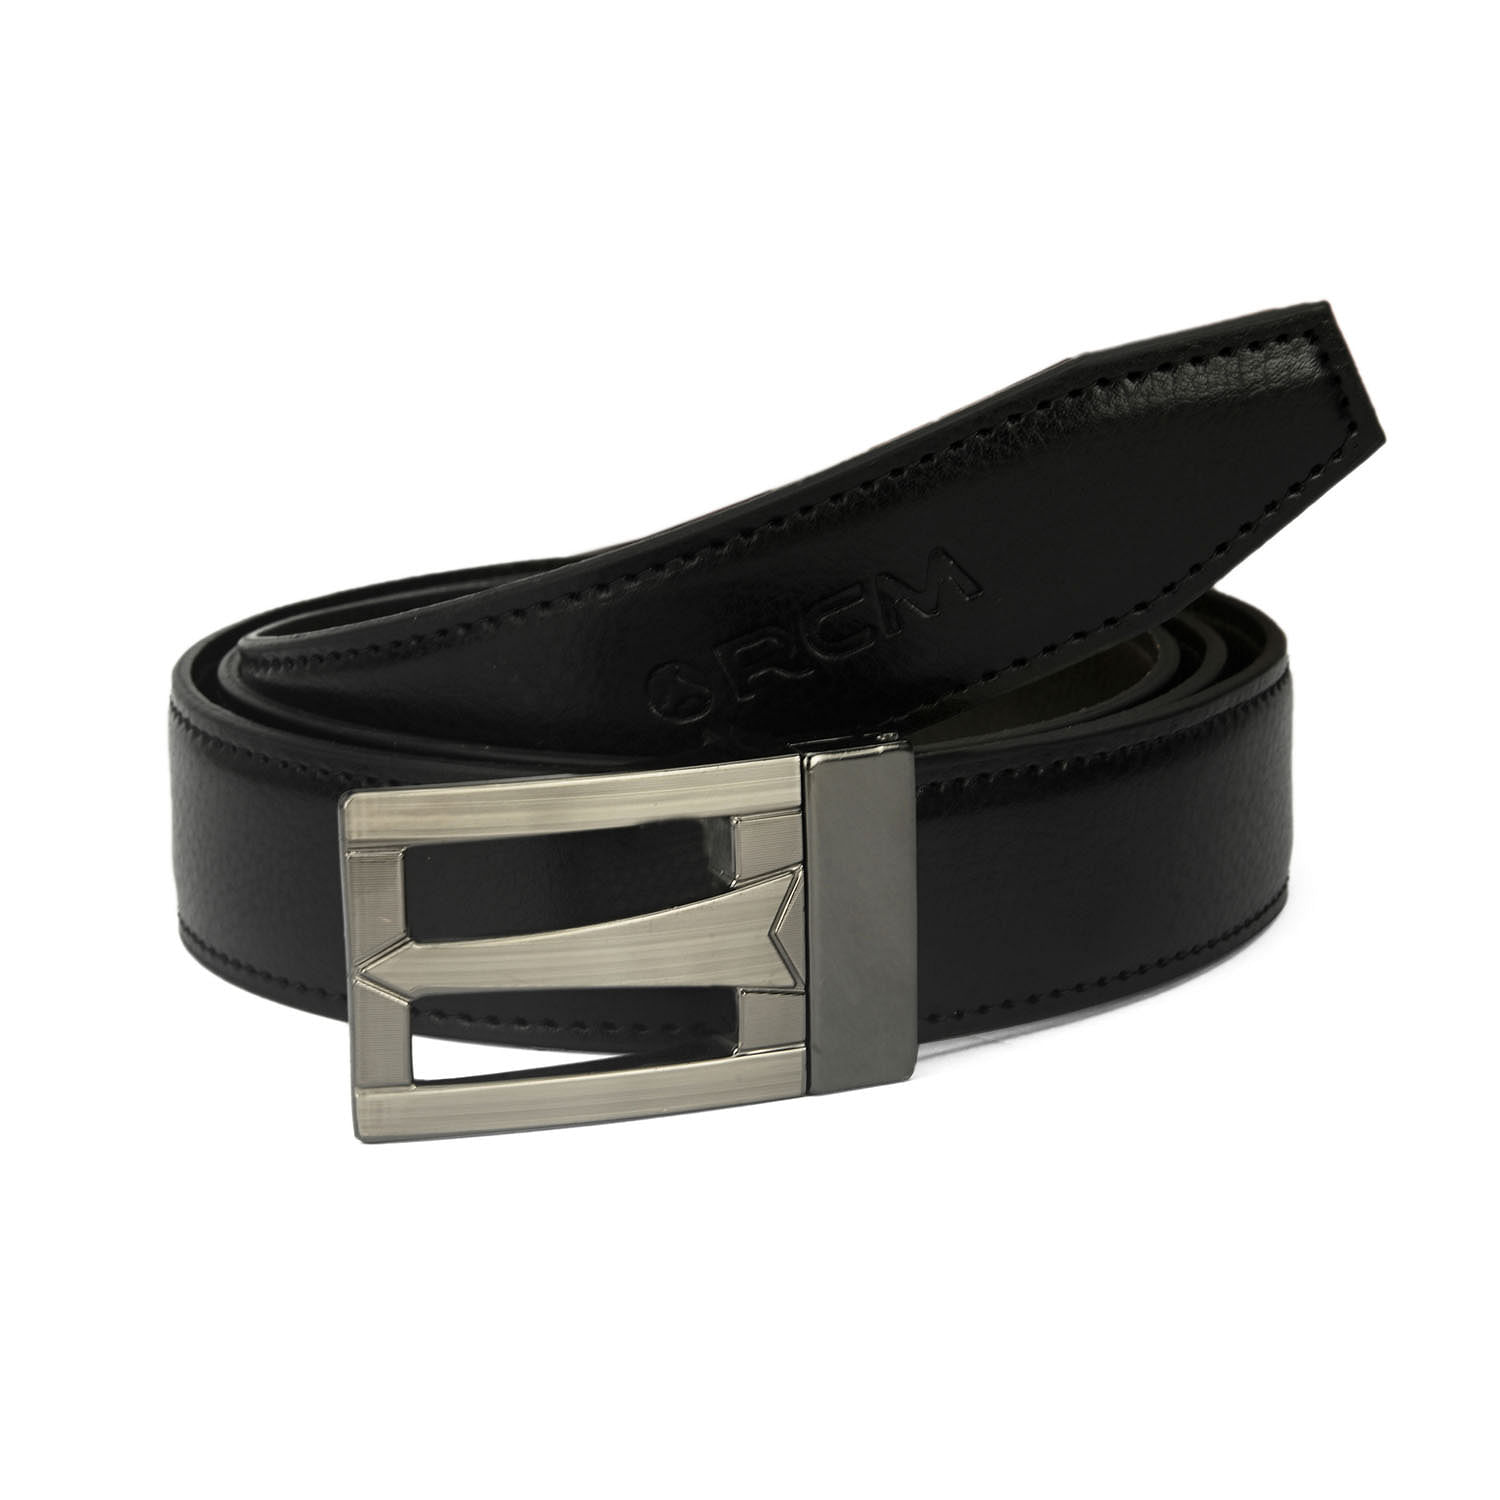 Men's Formal Belt with reversable Strap - FR-DB0007 - Black/Brown